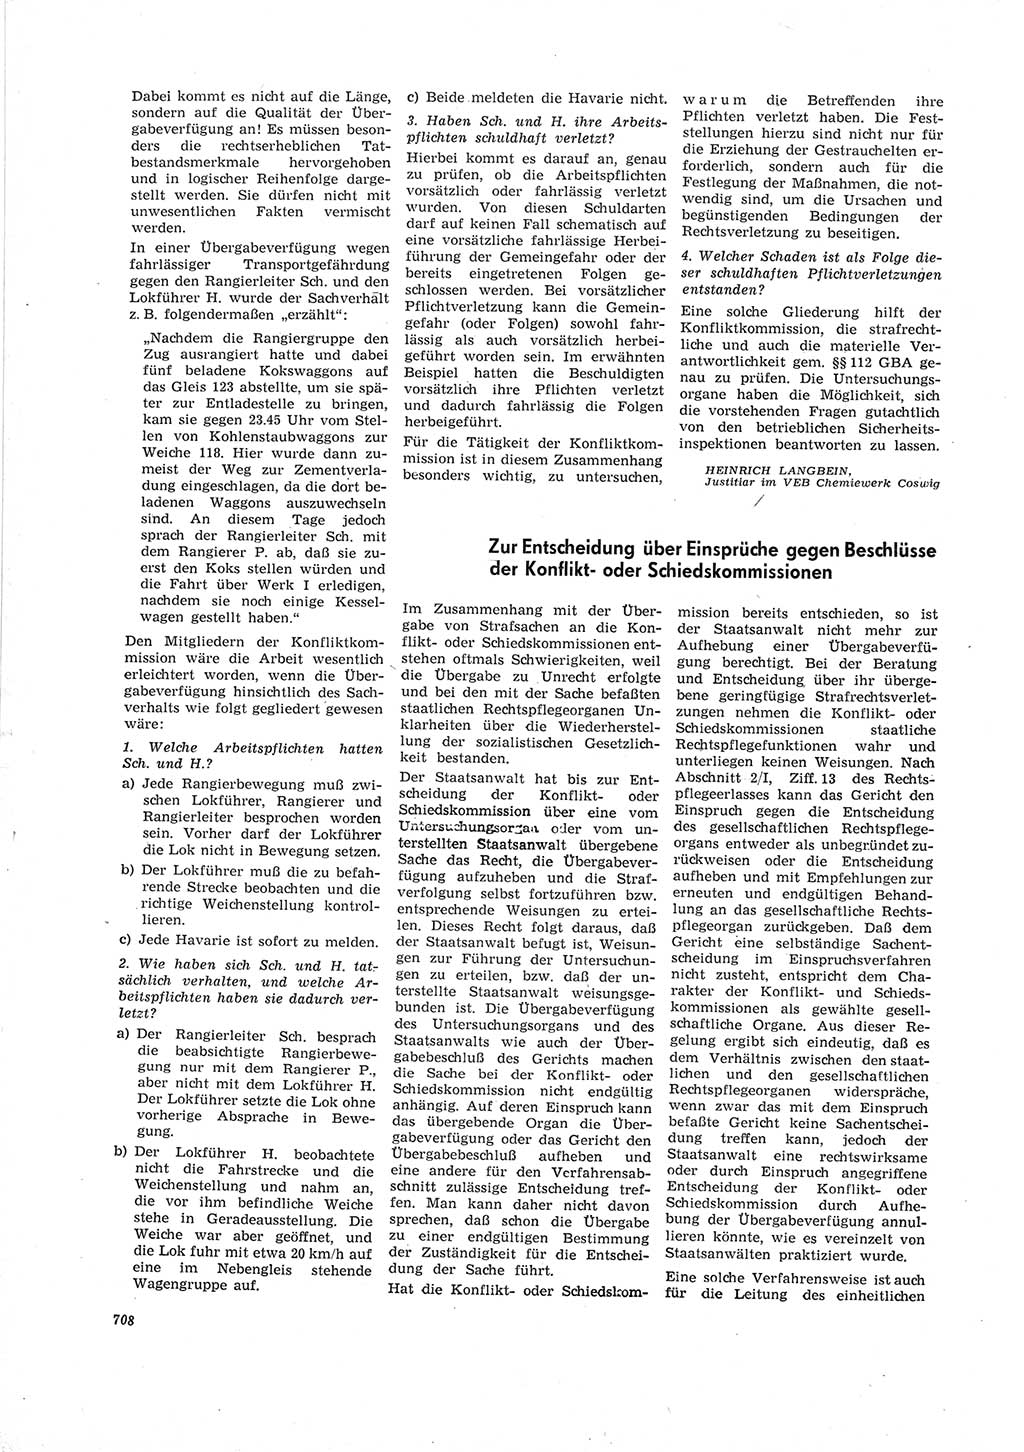 Neue Justiz (NJ), Zeitschrift für Recht und Rechtswissenschaft [Deutsche Demokratische Republik (DDR)], 19. Jahrgang 1965, Seite 708 (NJ DDR 1965, S. 708)